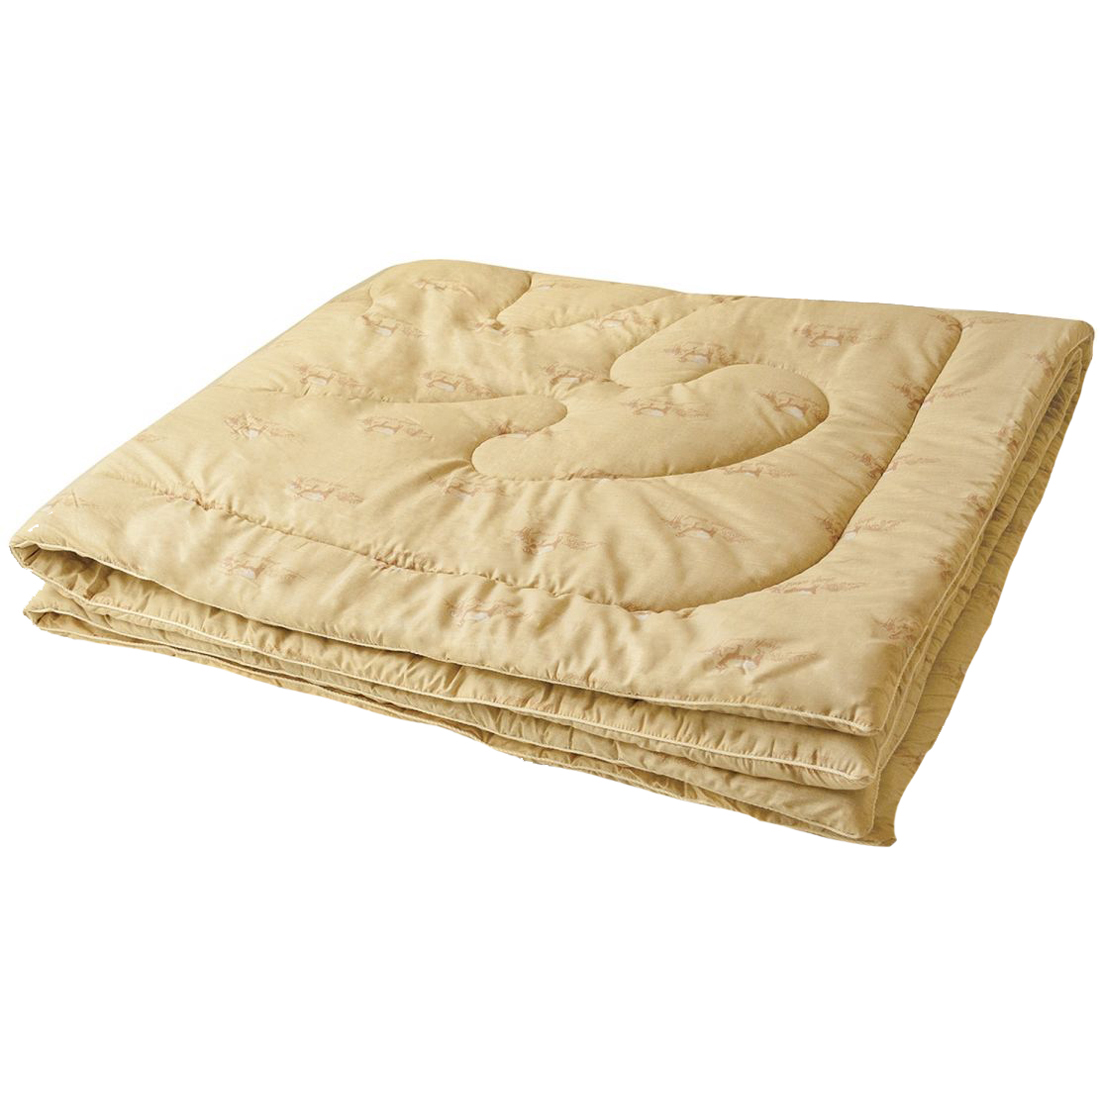 Одеяло из овечьей шерсти «Руно», размер 200х220 см., тёплое